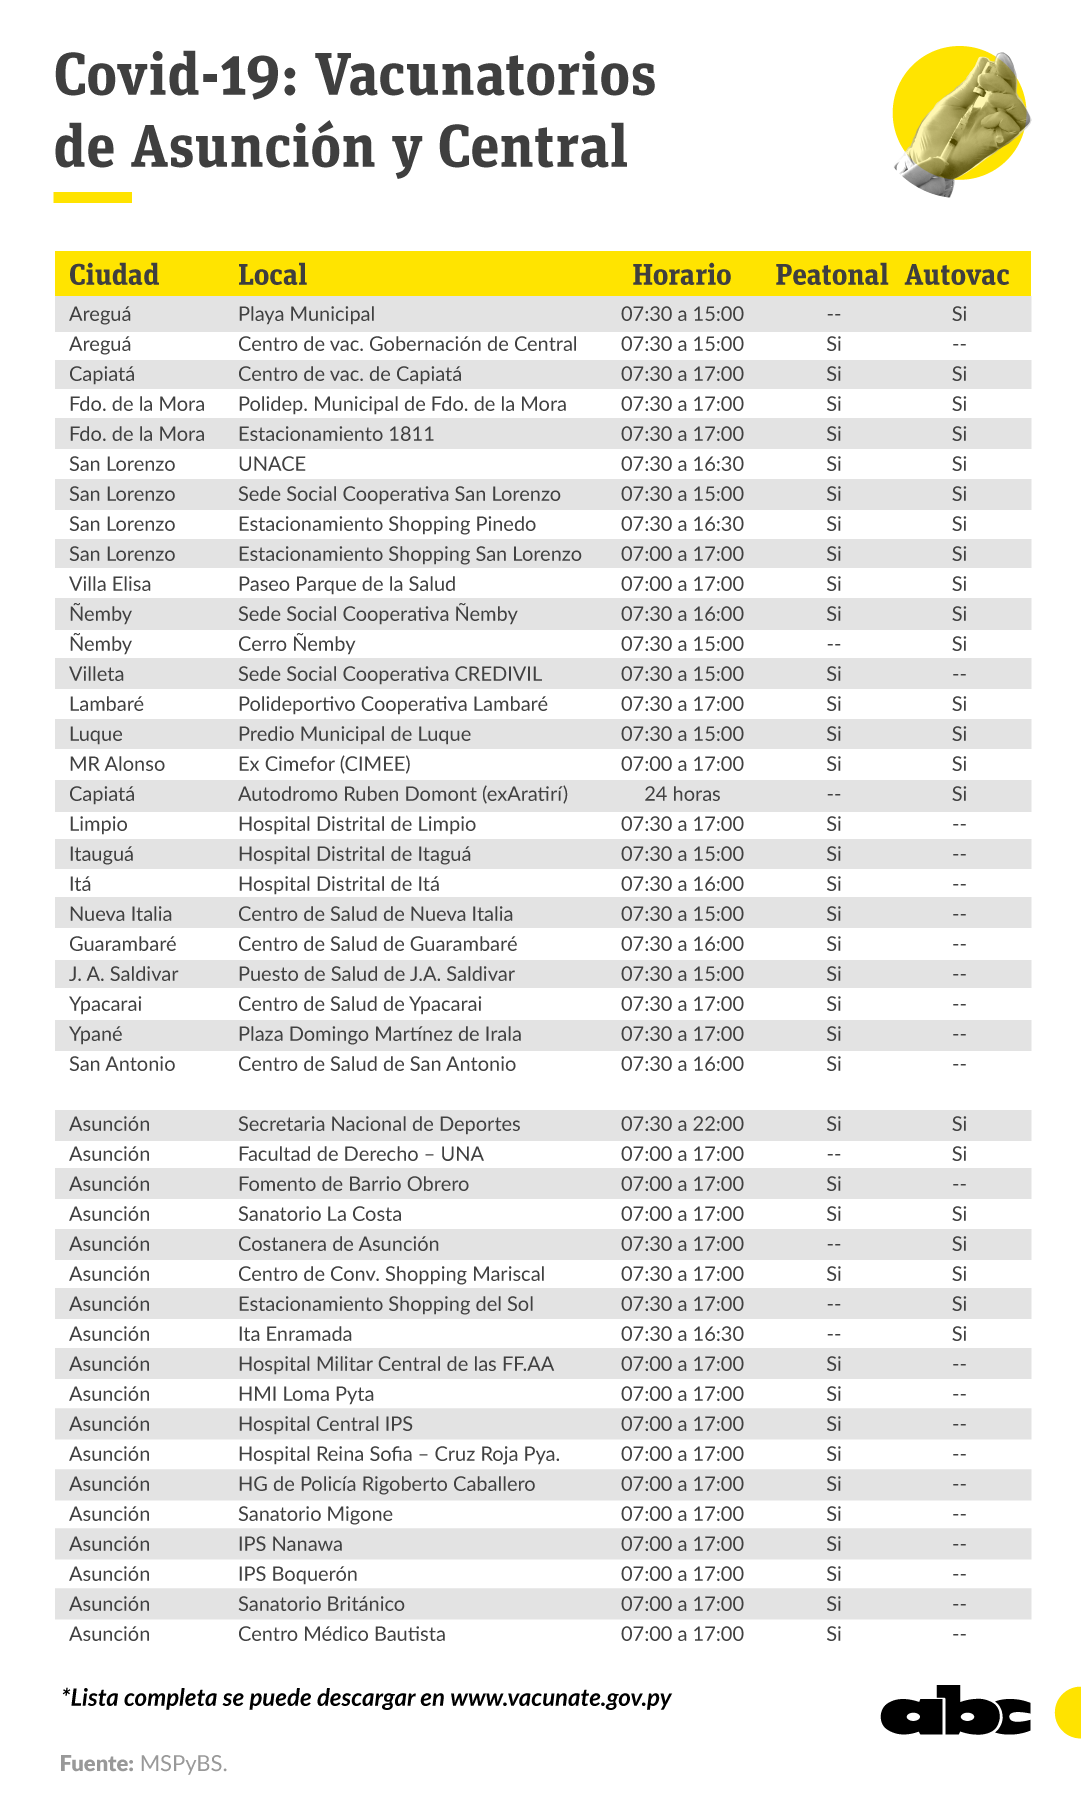 En total son 217 los vacunatorios que estarán habilitados a partir del lunes. Se puede acceder a la lista completa en www.vacunate.gov.py.